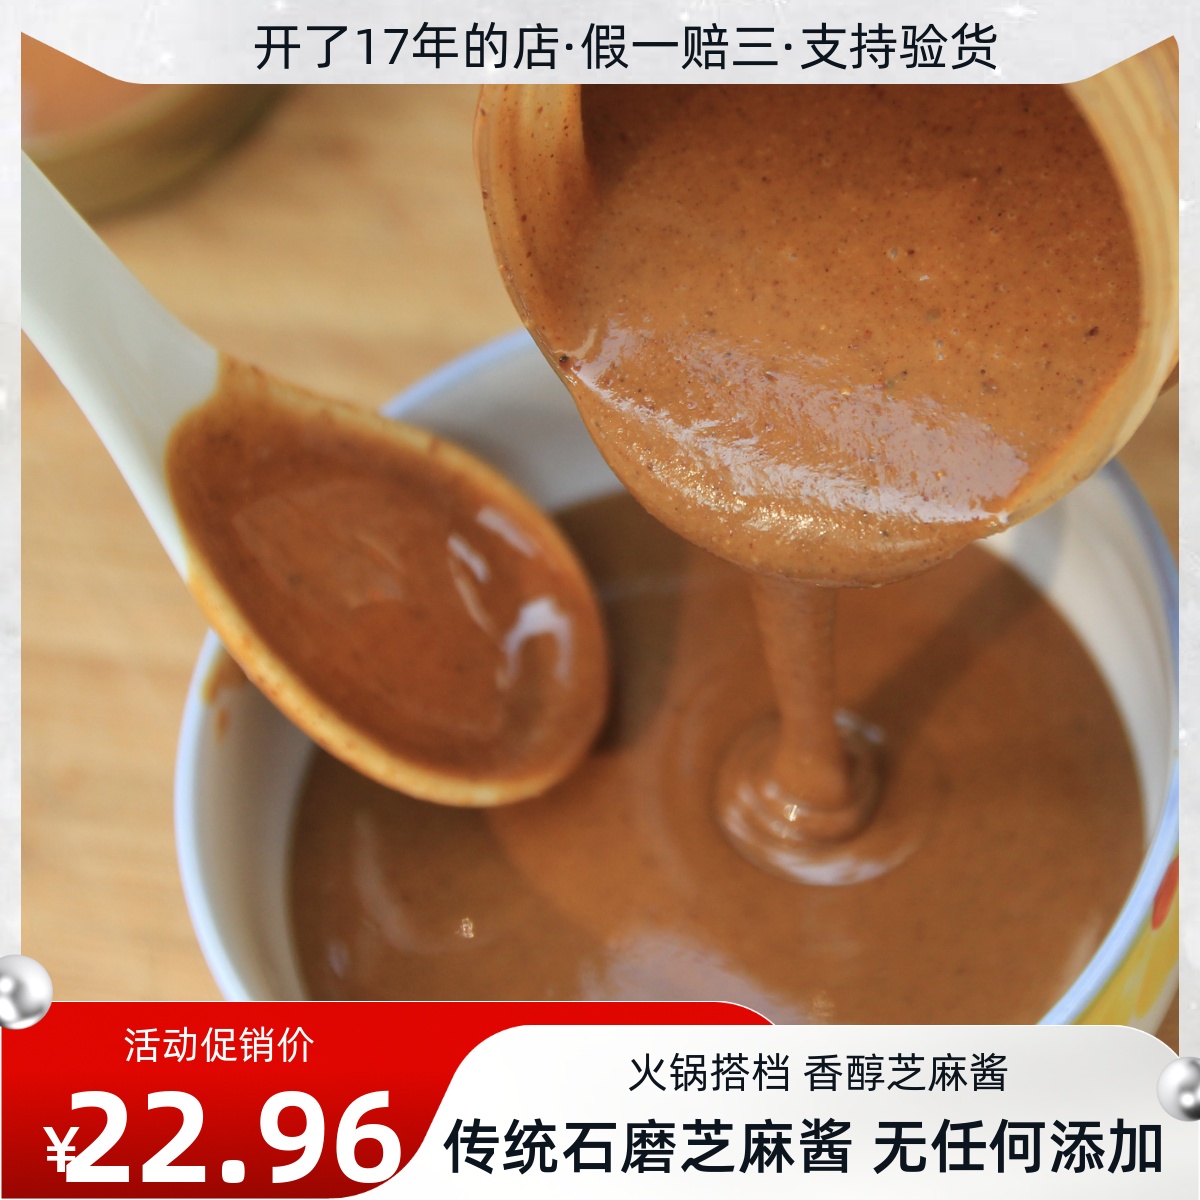 传统石磨芝麻酱360克 麻汁 火锅热干面酱料花生酱 原味混合芝麻酱